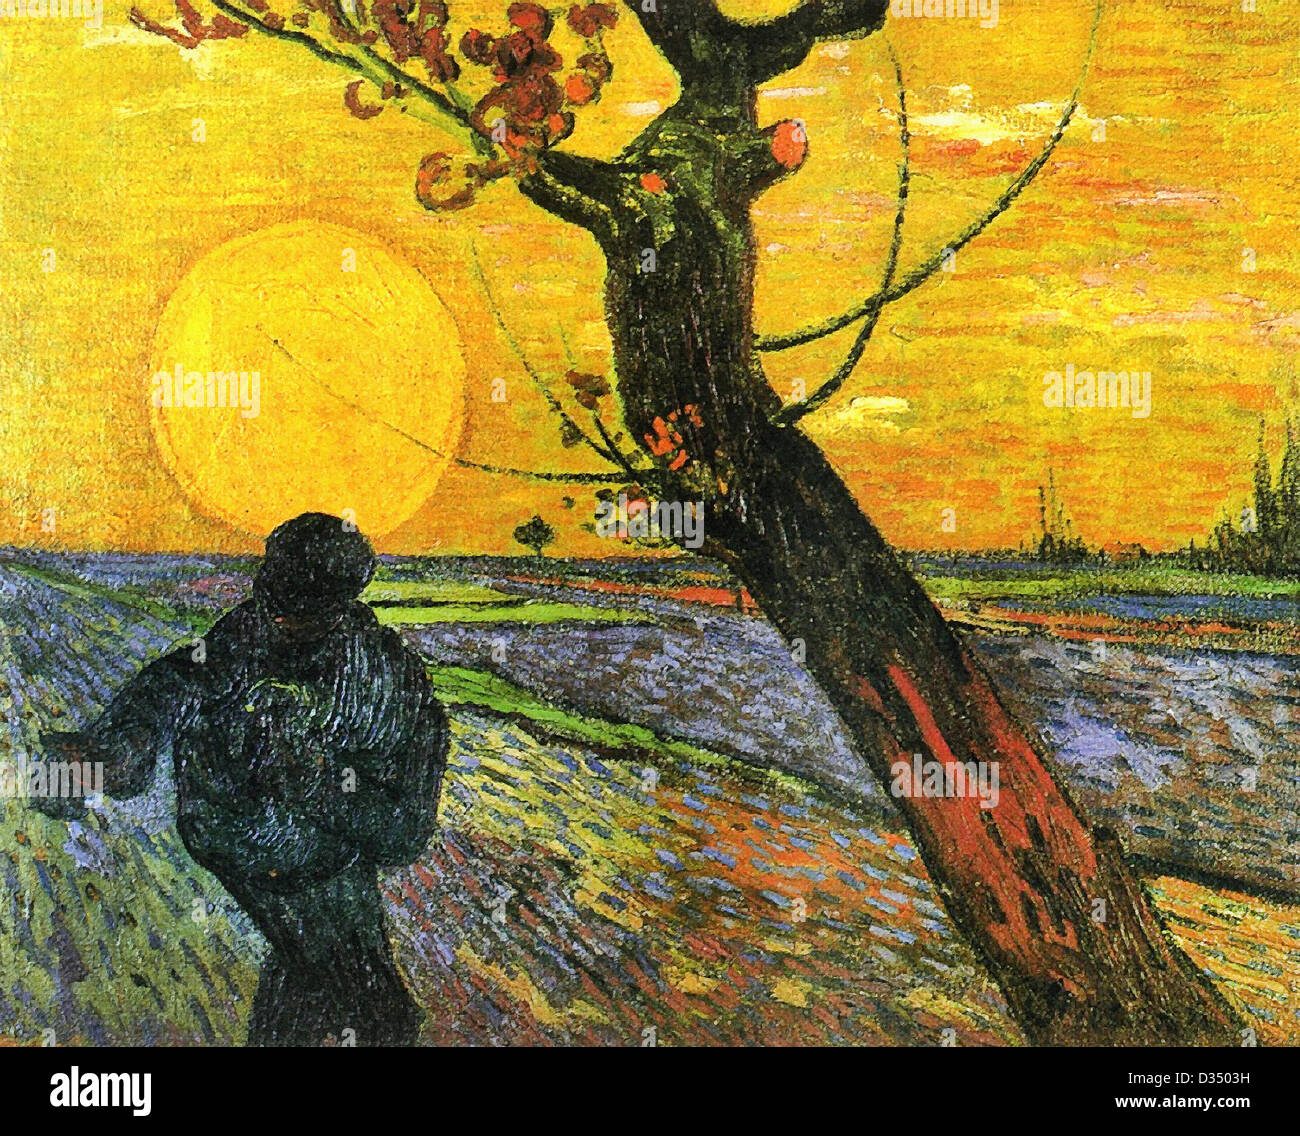 Vincent van Gogh, Semeur avec Couchant. 1888. Le postimpressionnisme. Huile sur toile. La Fondation Bührle, Zurich, Suisse. Banque D'Images